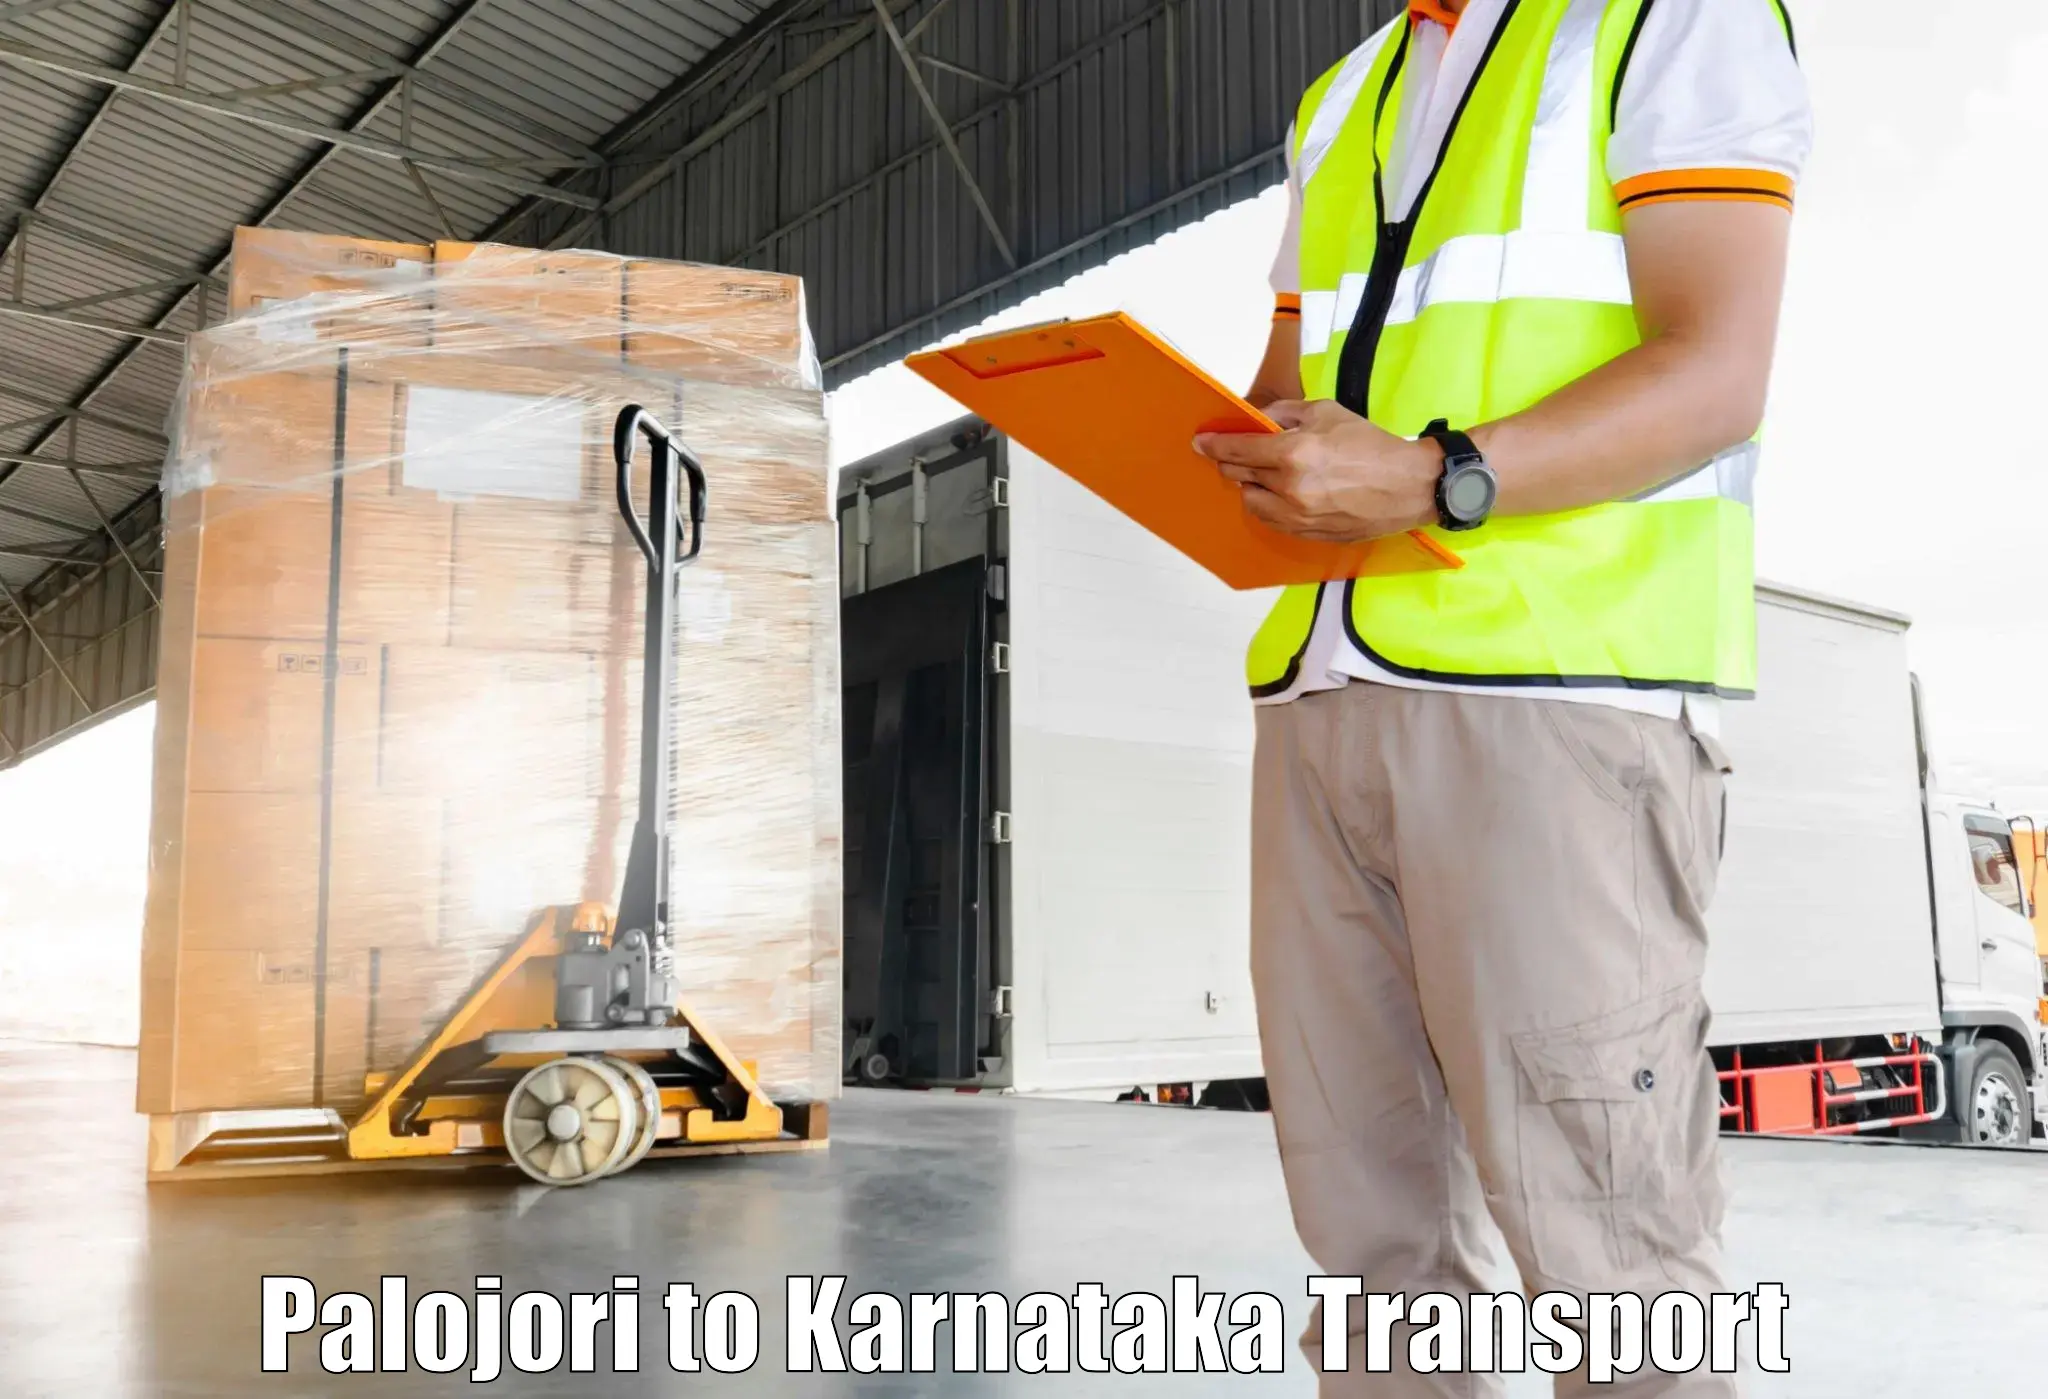 Door to door transport services Palojori to Karnataka